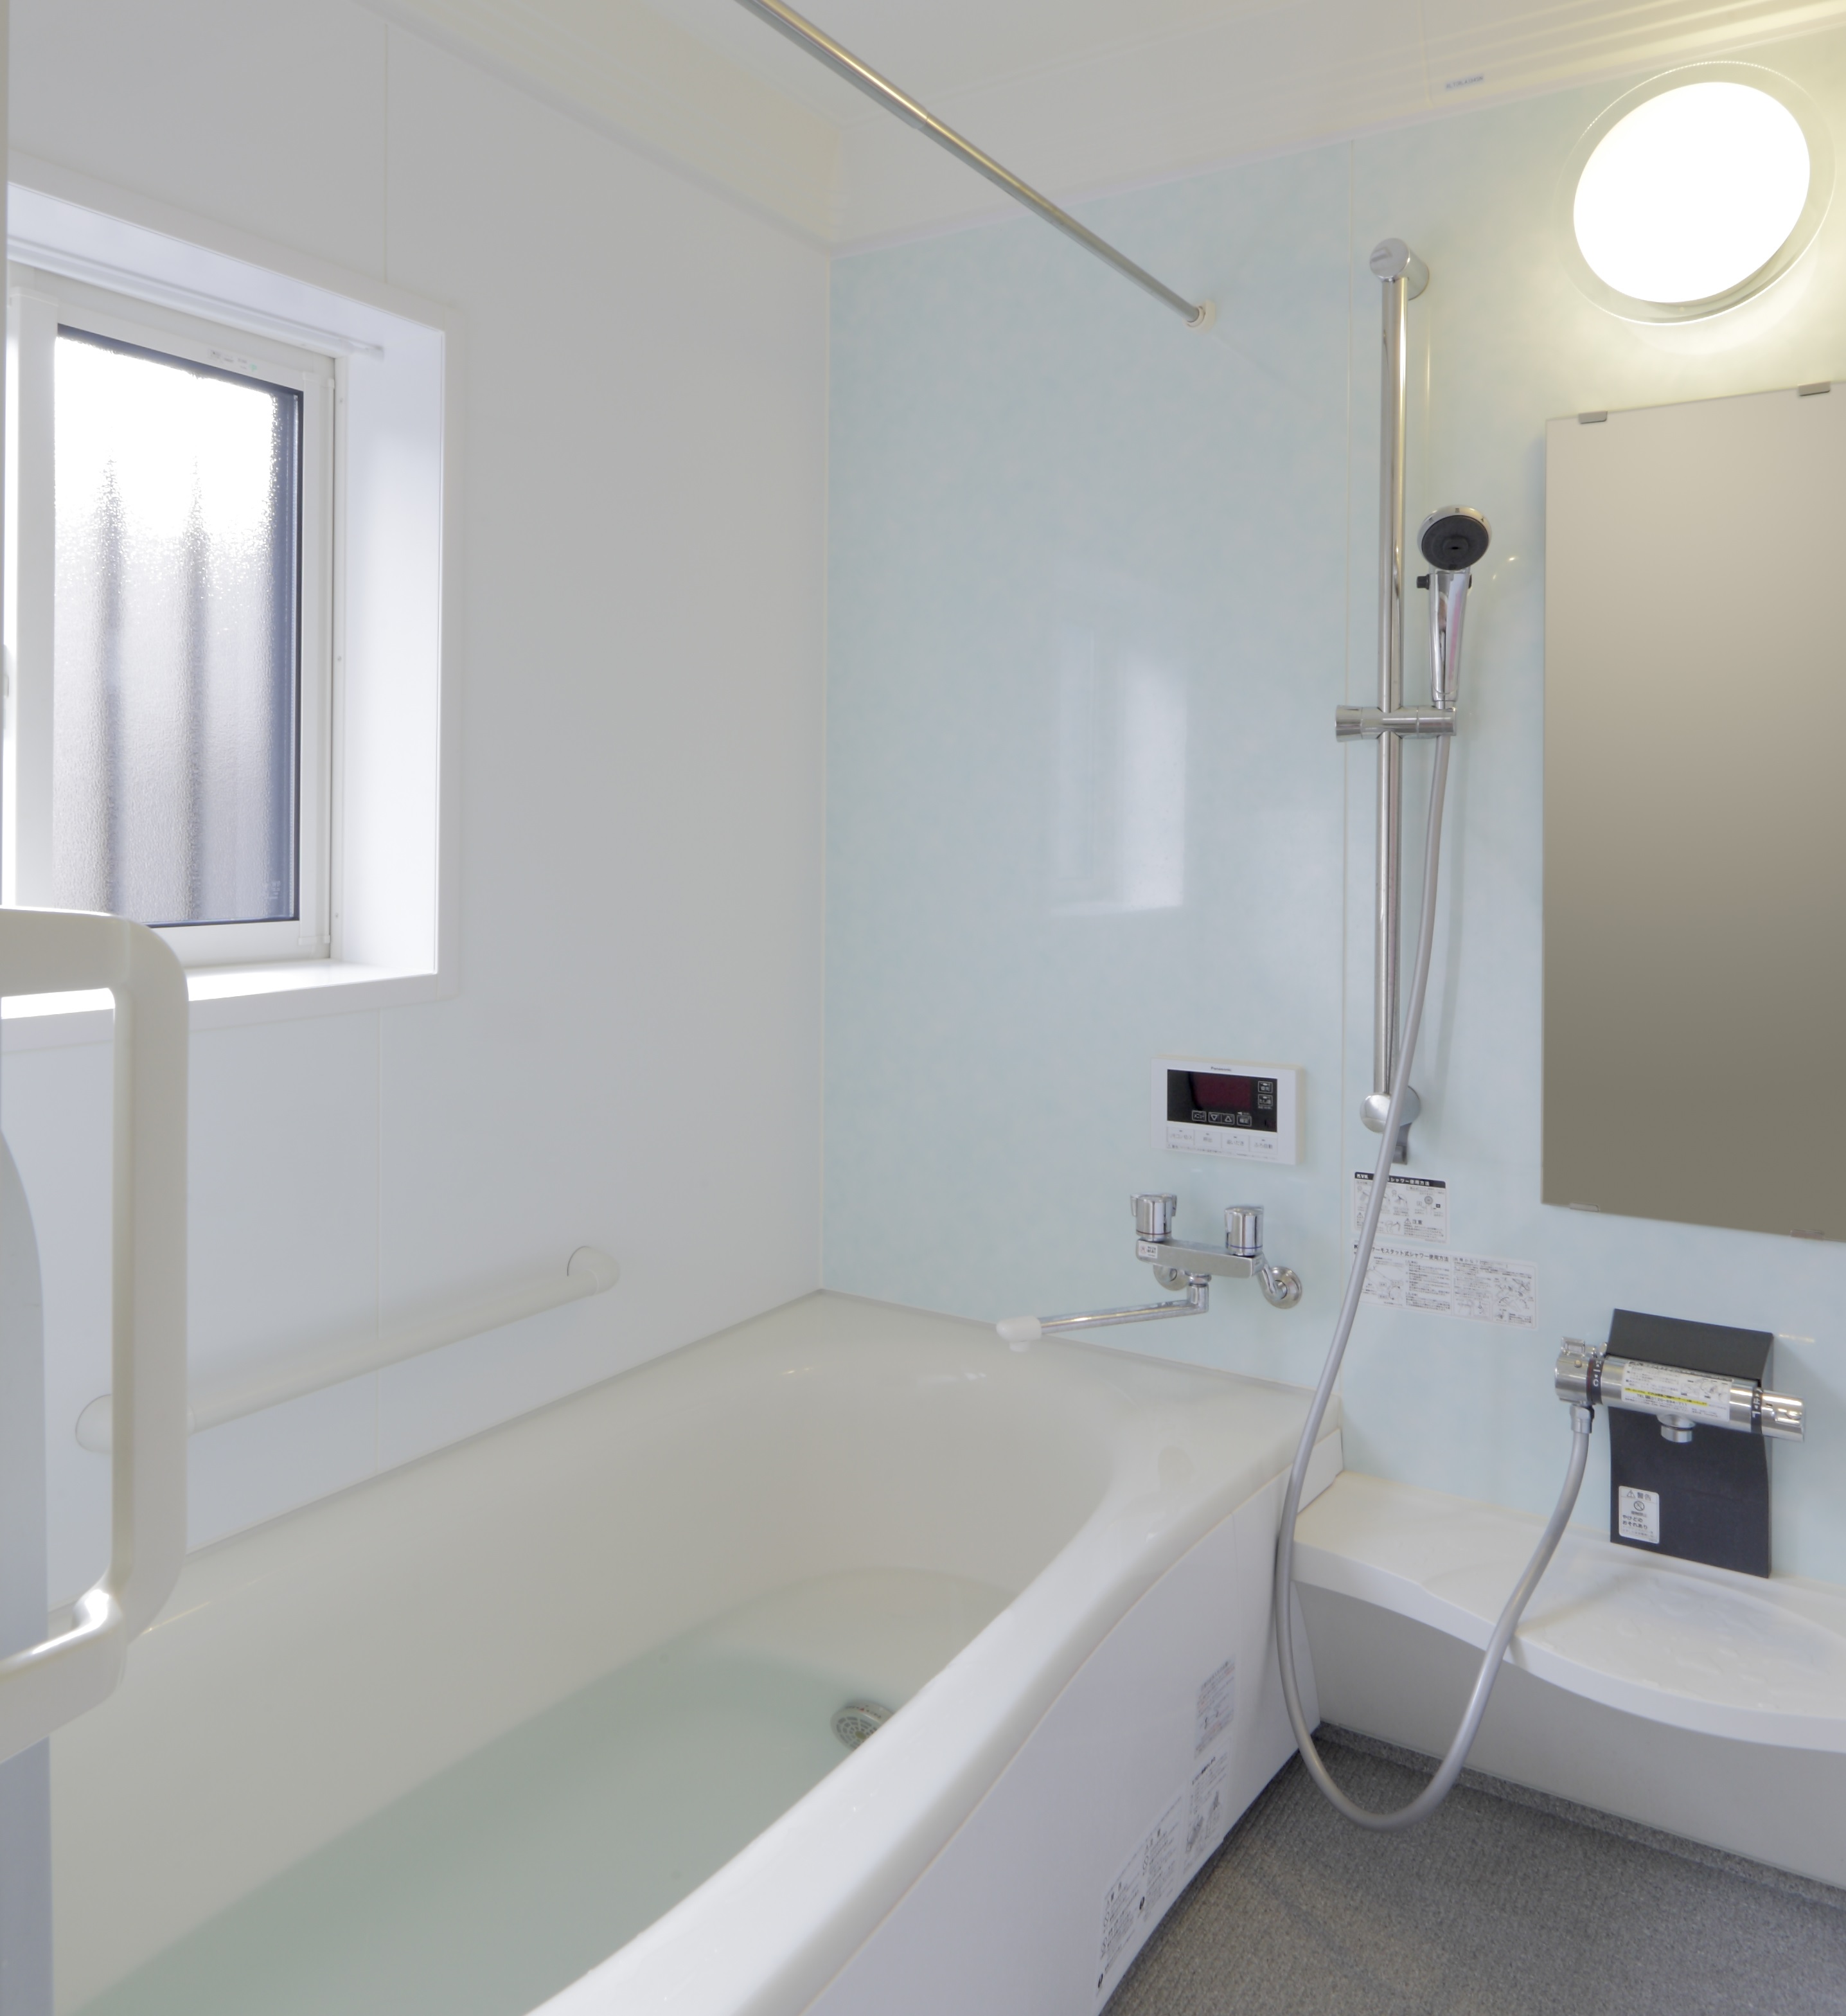 庄原市|寒さと足元の不安を改善した浴室リフォーム 画像